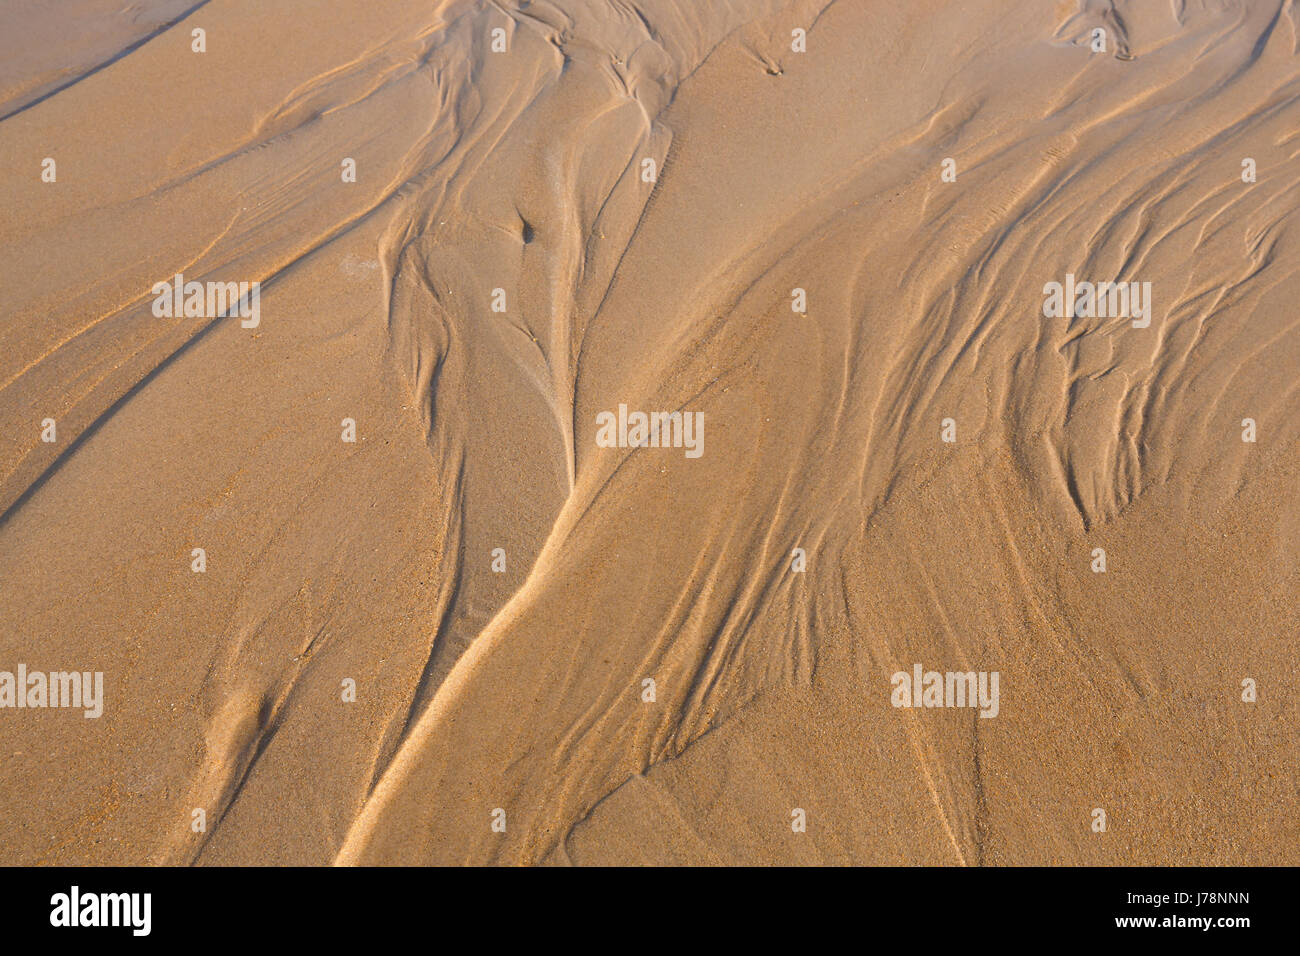 Pattens nella sabbia Foto Stock